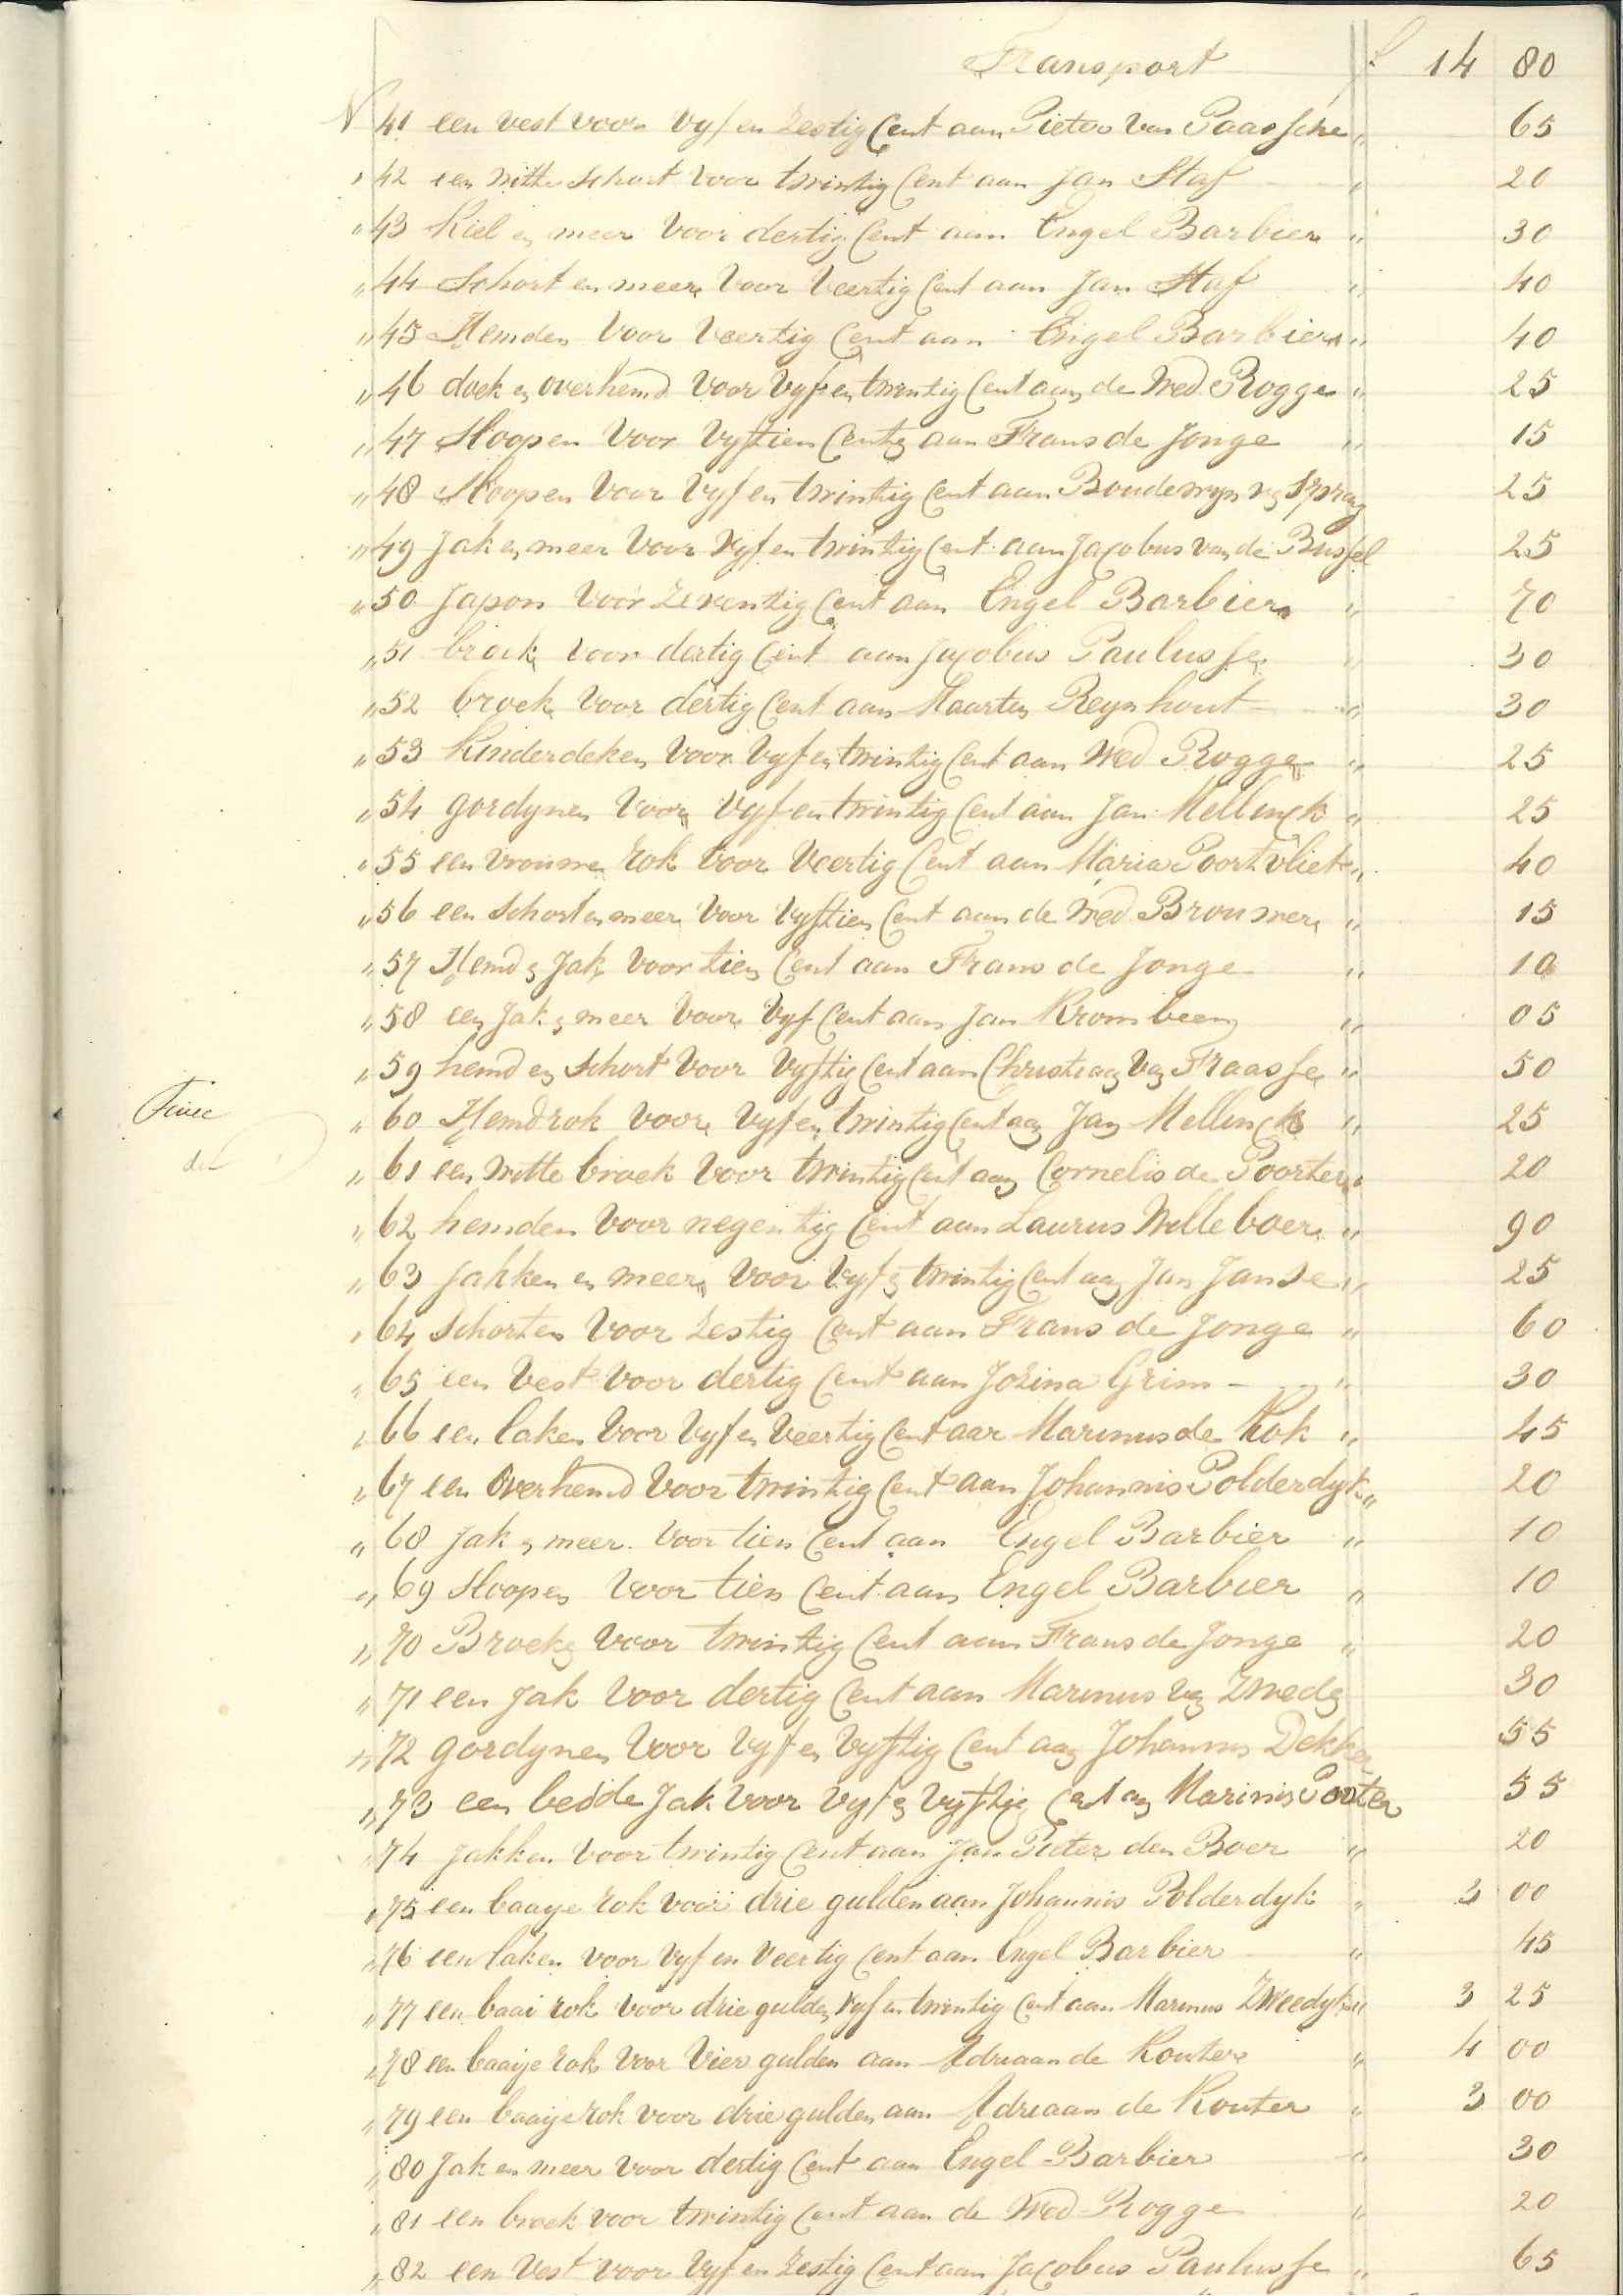  Proces-verbaal van de verkoop van goederen door de leenbank, 1847. GAG.Arch.bank,inv.nr. 71.